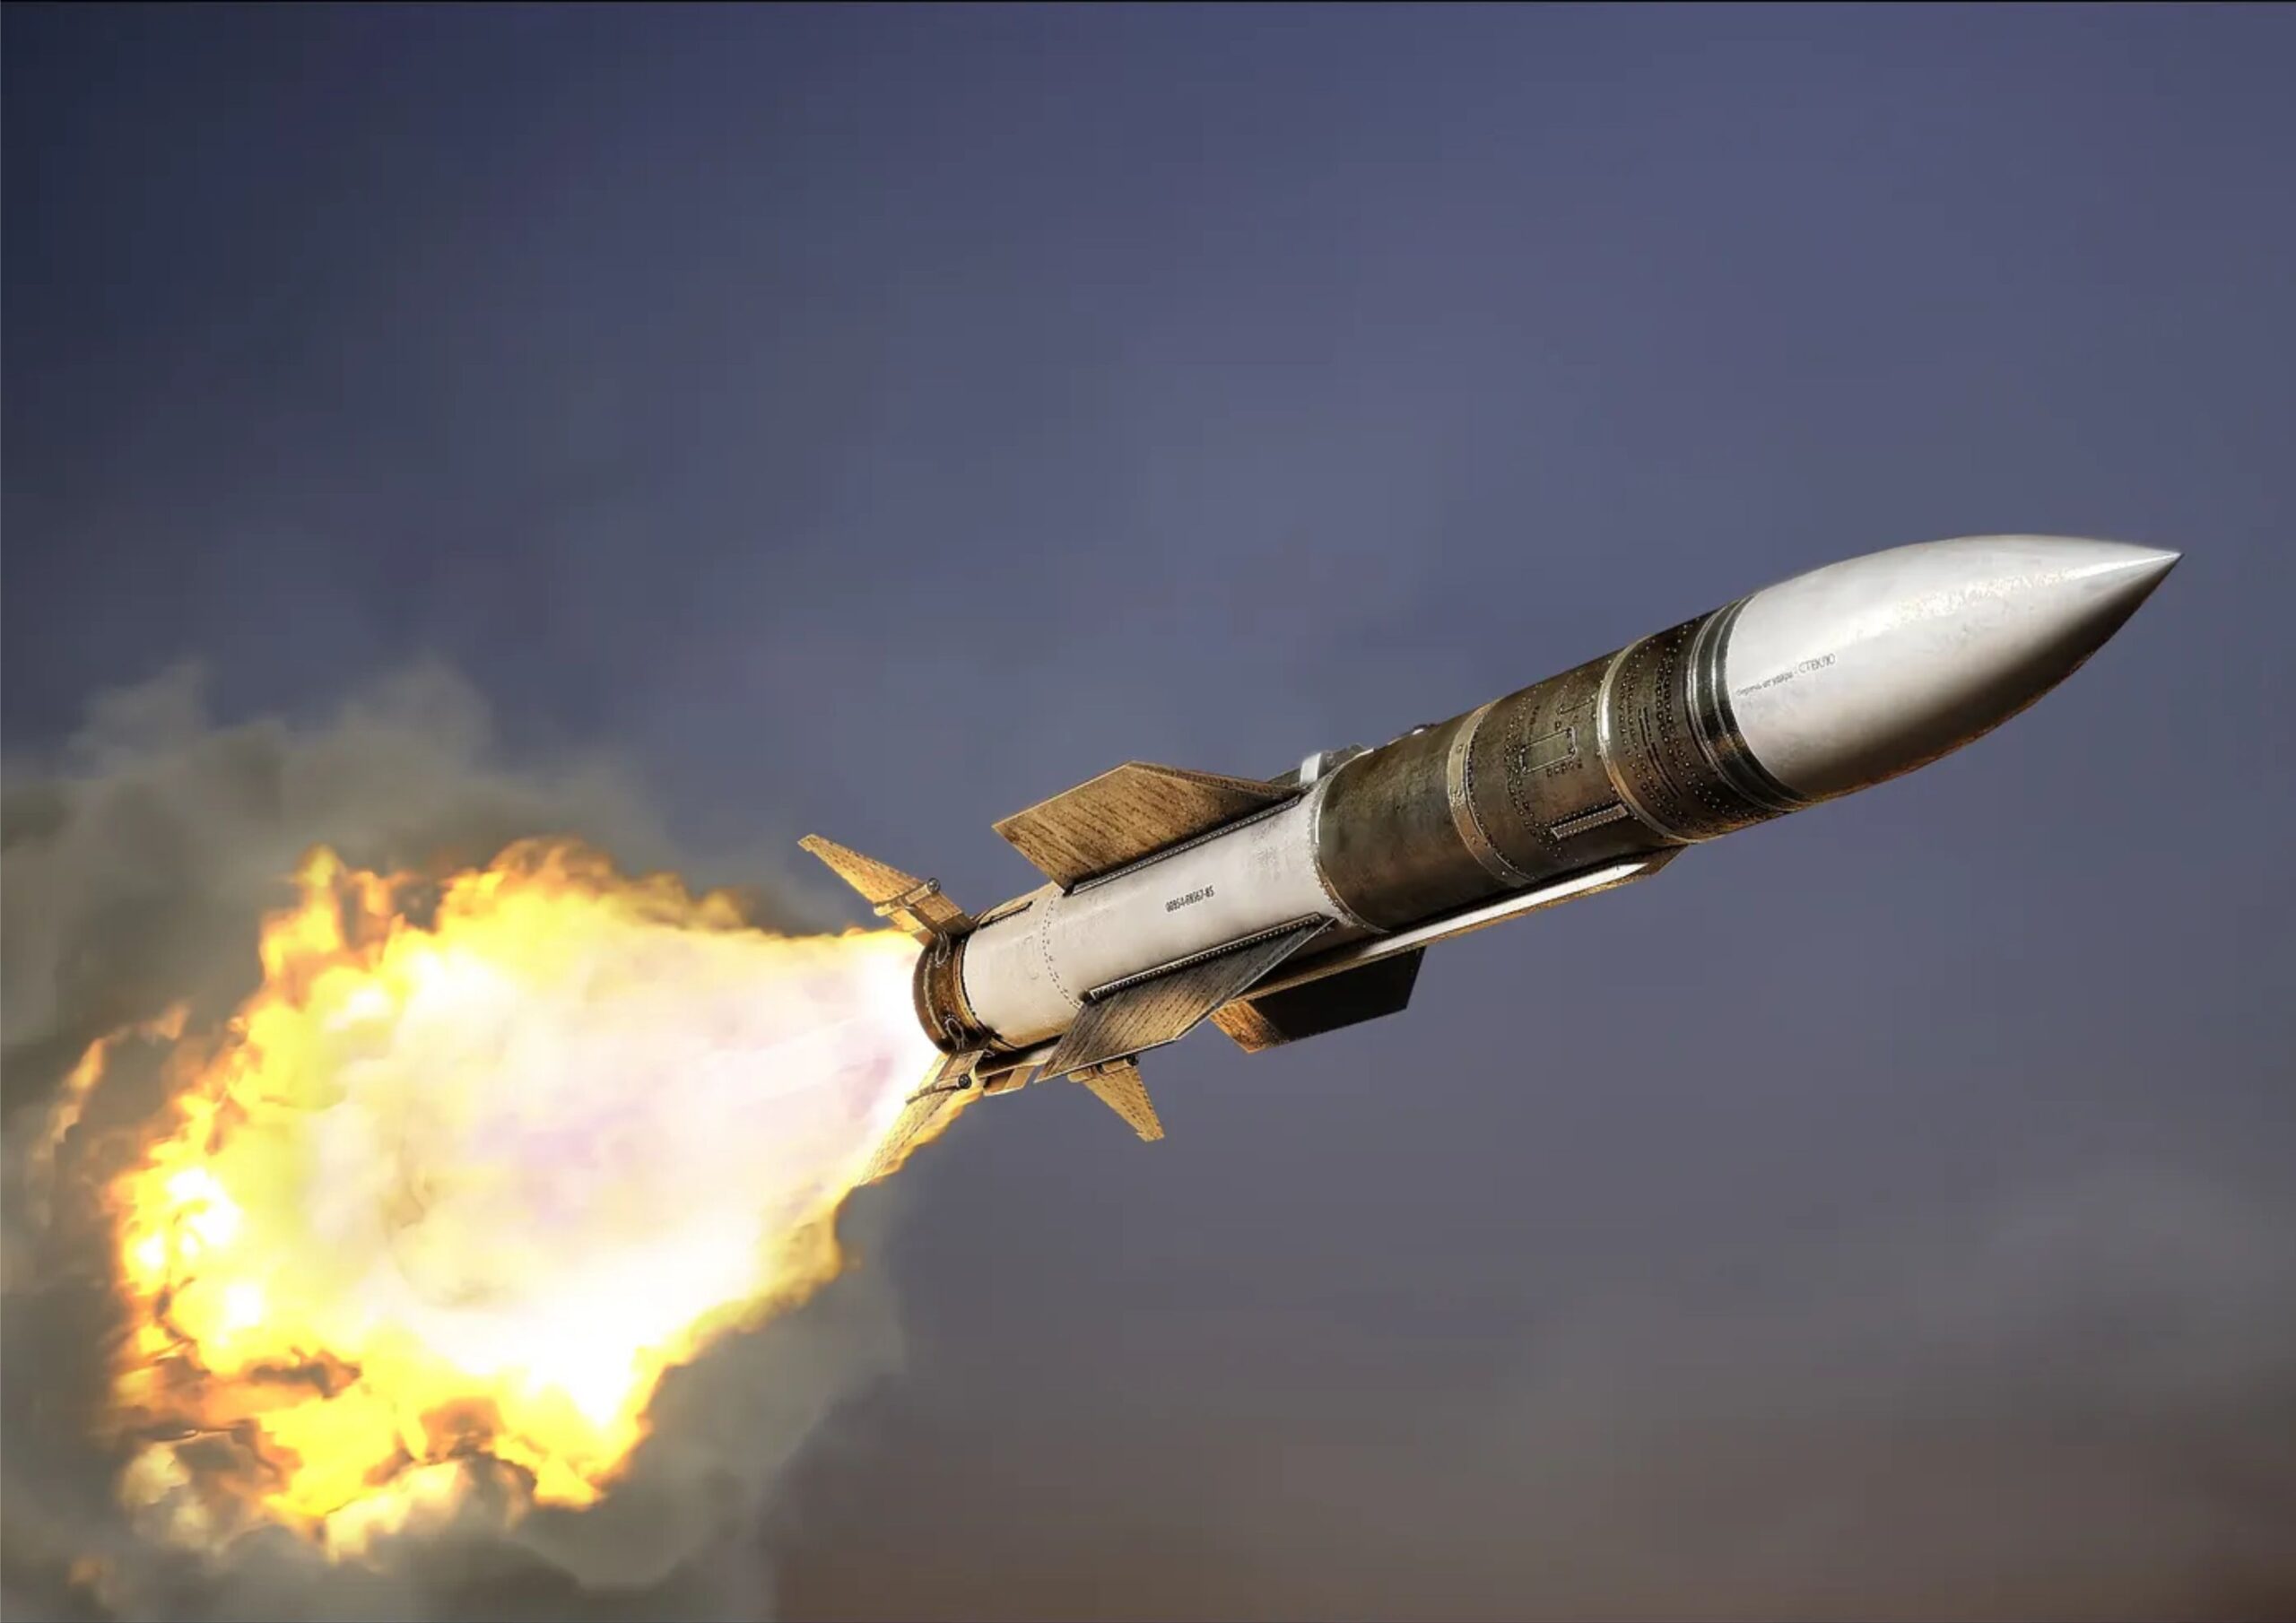 Наводящая ракета. Баллистические и крылатые ракеты. Pl-15 ракета воздух-воздух. Р-37 ракета «воздух-воздух». Боеголовка Минитмен 3.